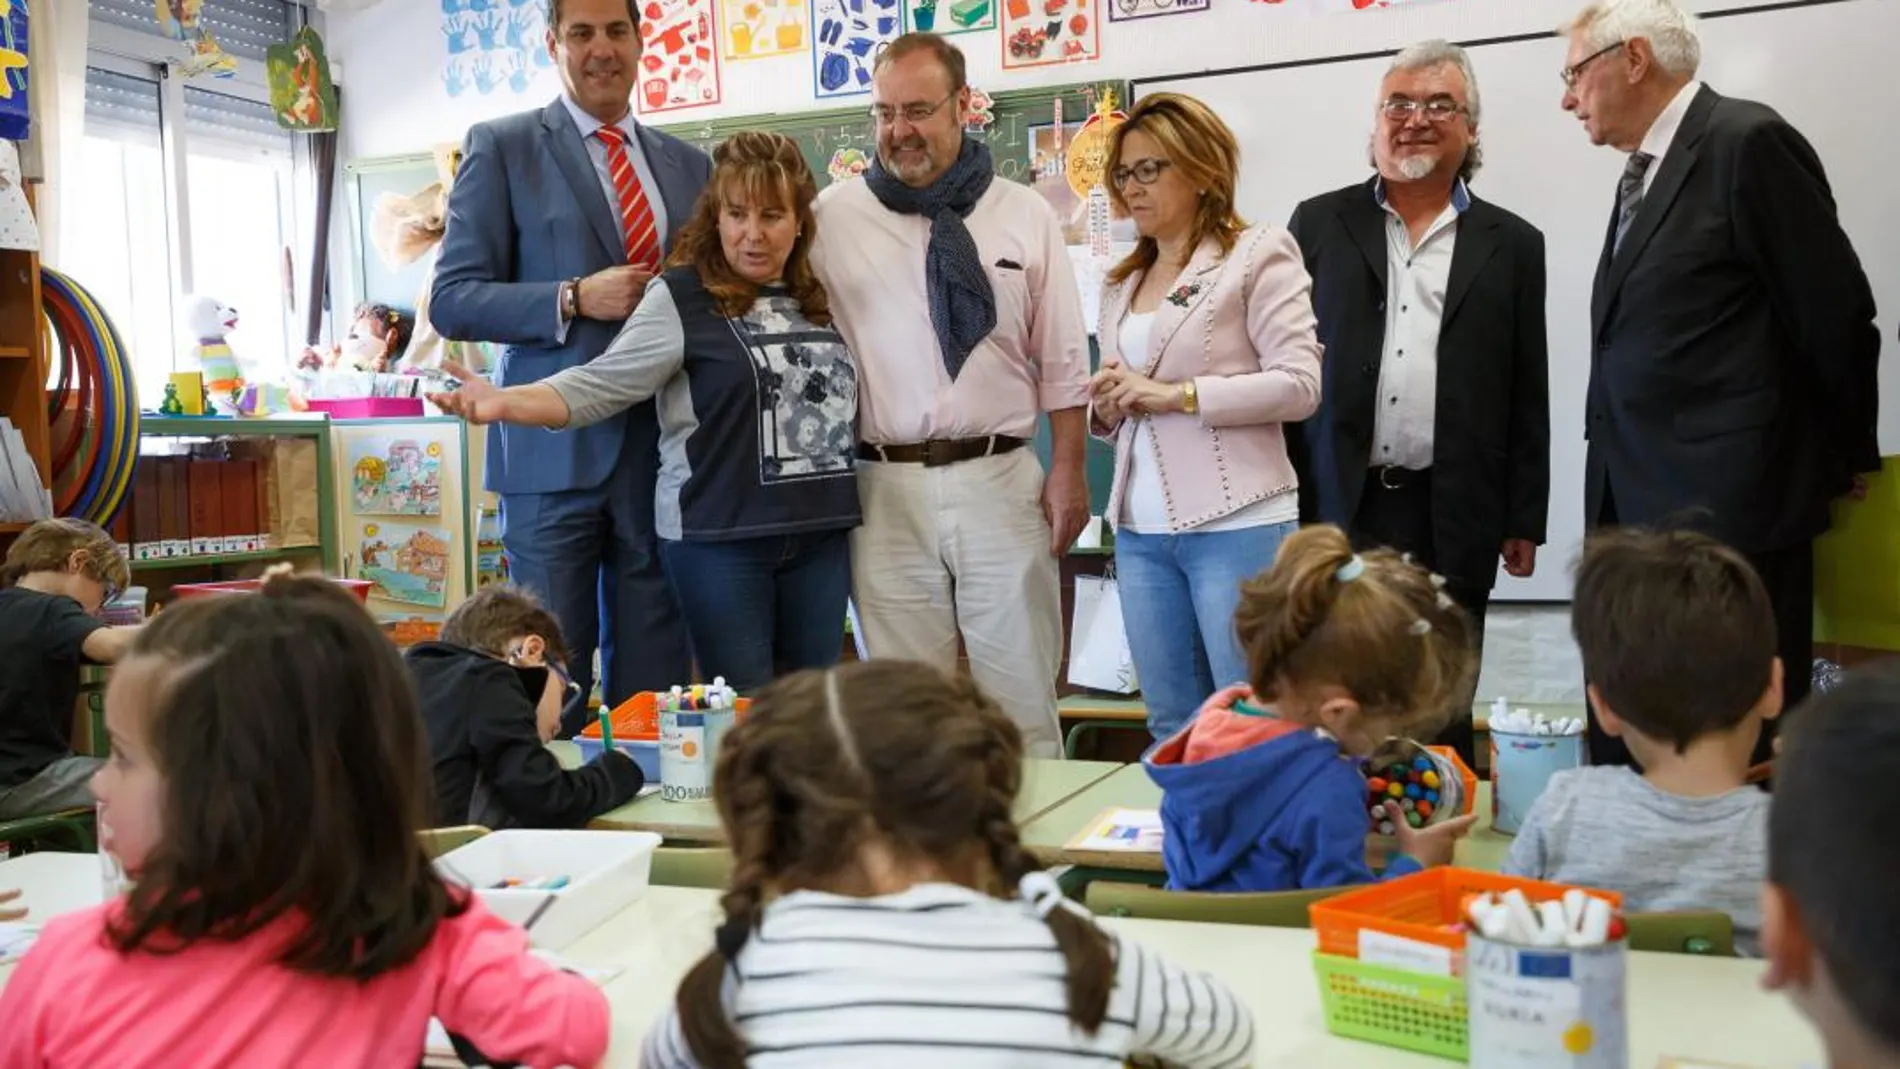 El consejero de Educación, Fernando Rey, visita un colegio de la comarca zamorana de Aliste, acompañado de la presidenta de la Diputación, Mayte Martín / J. L. Leal/Ical